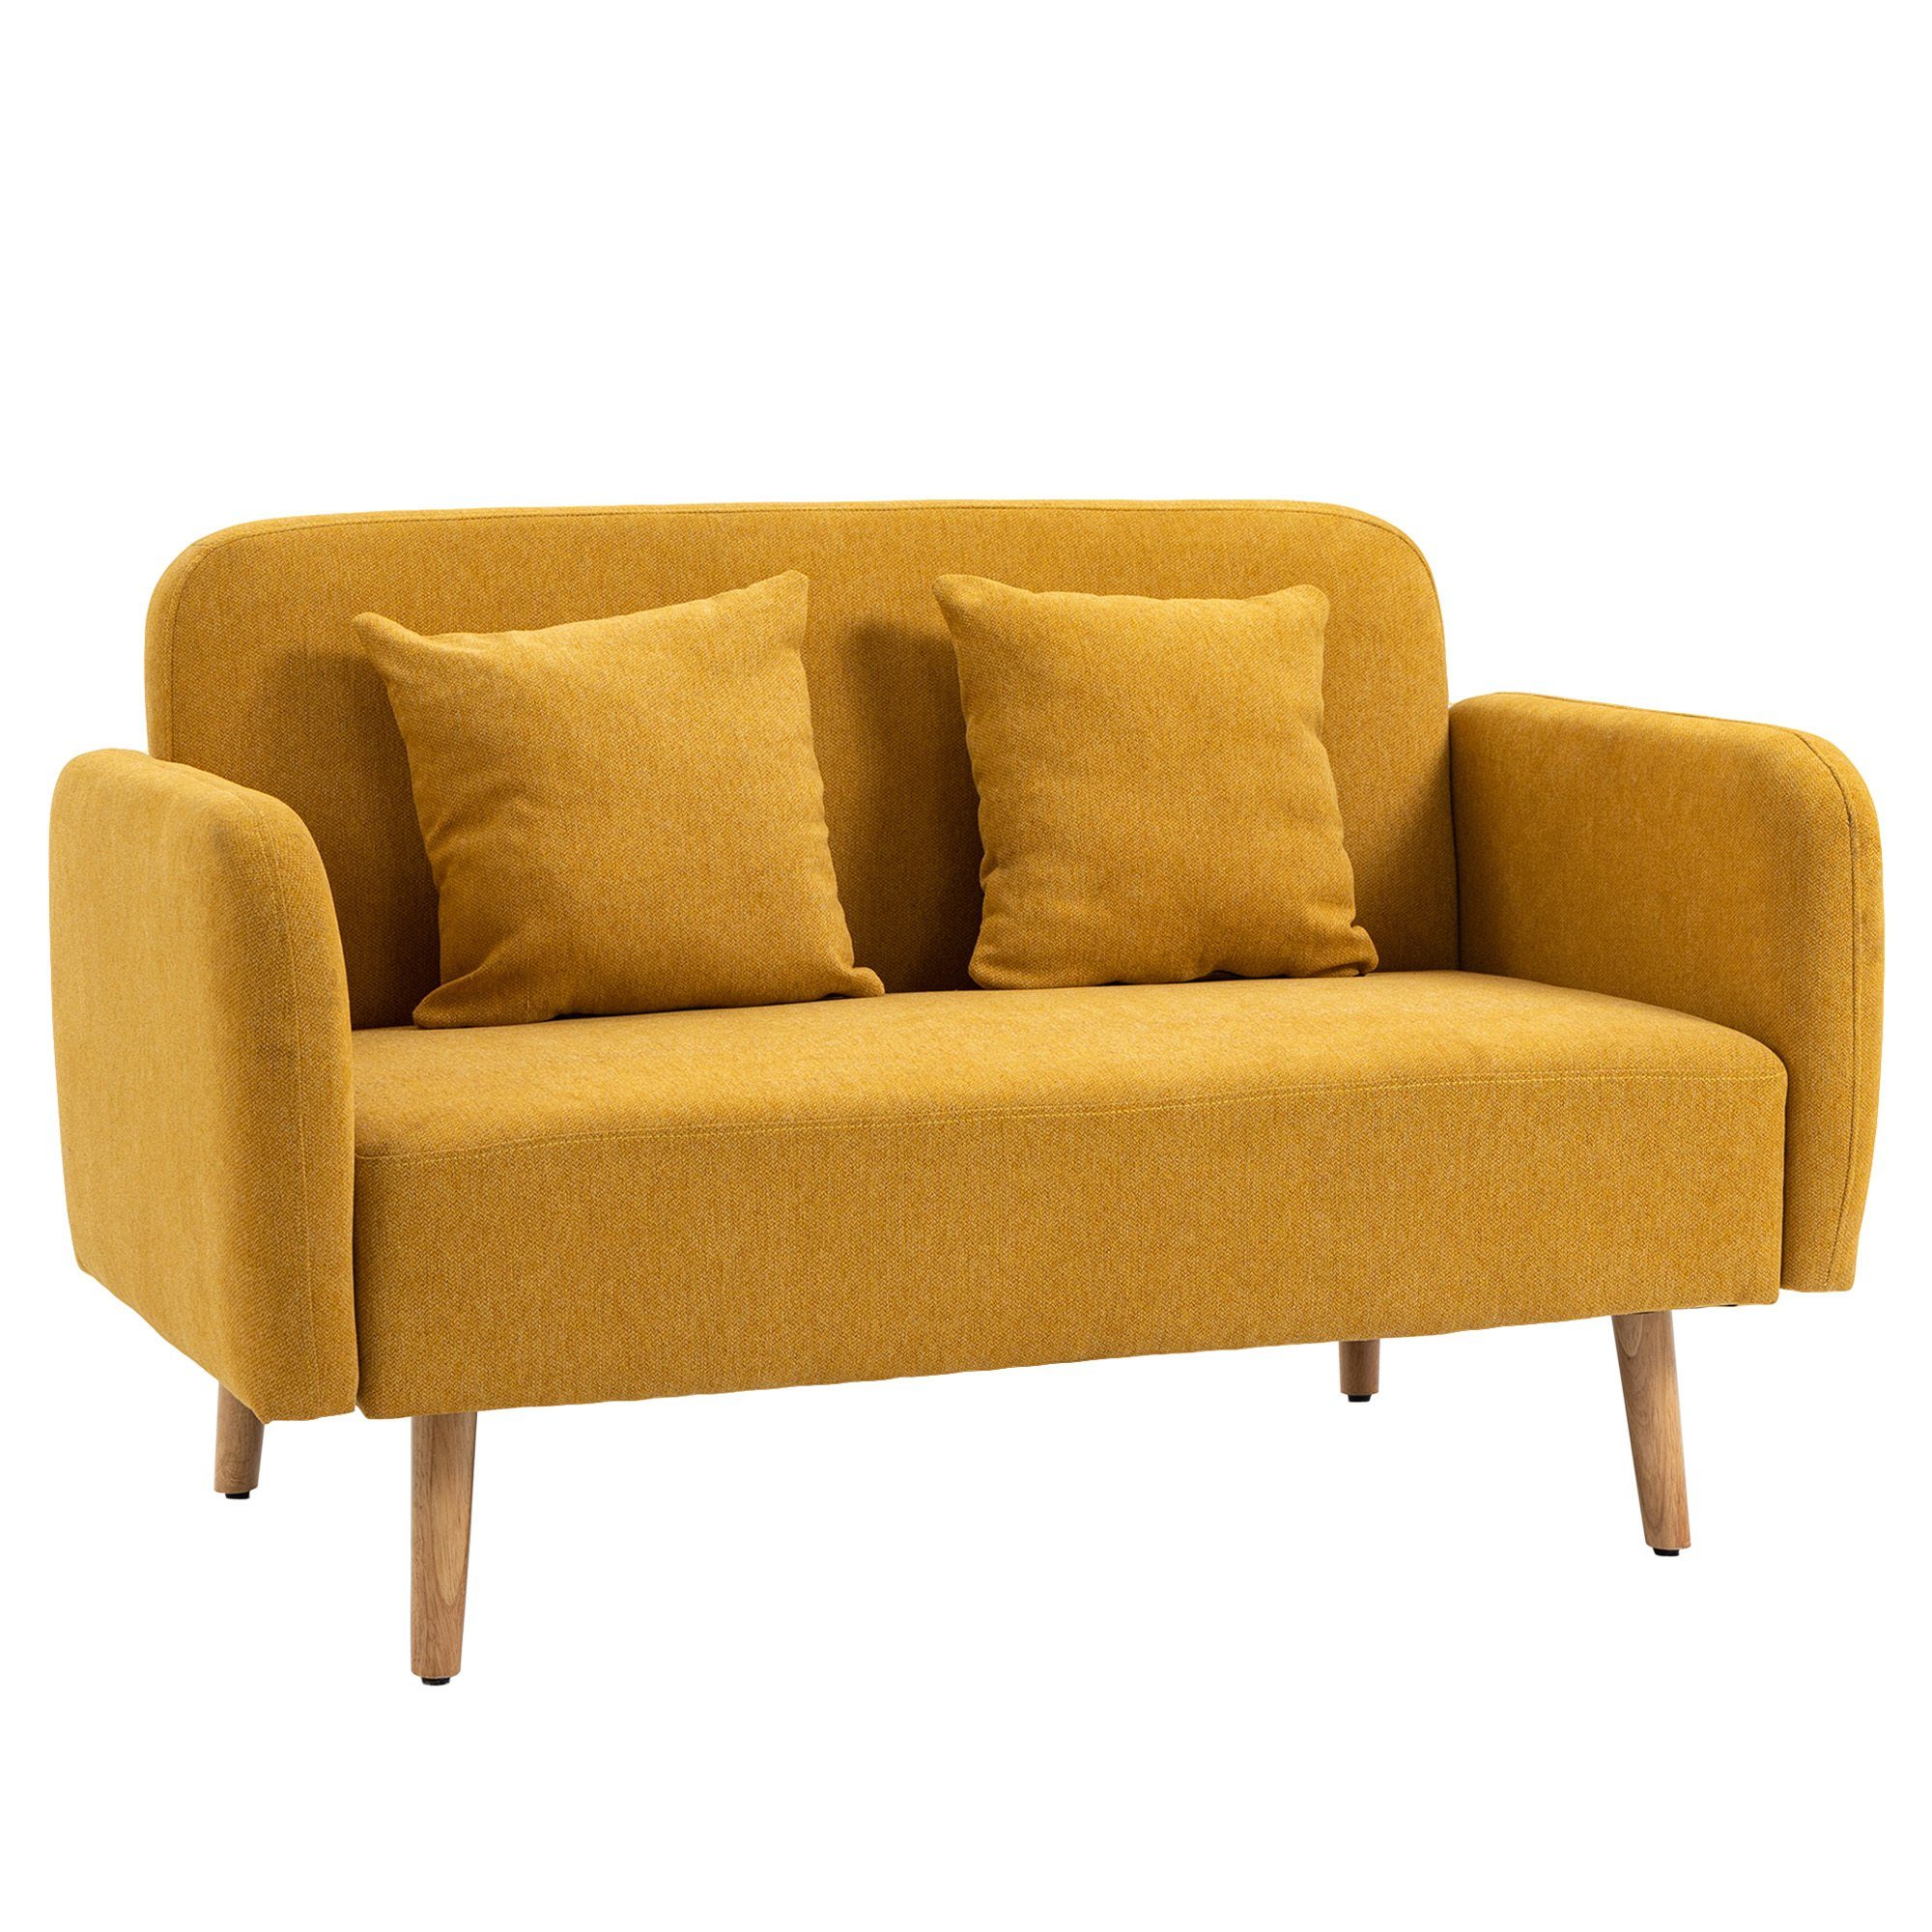 HOMCOM 2-Sitzer Doppelsofa mit Kissen und Anti-Rutsch Beinen natur, gelb